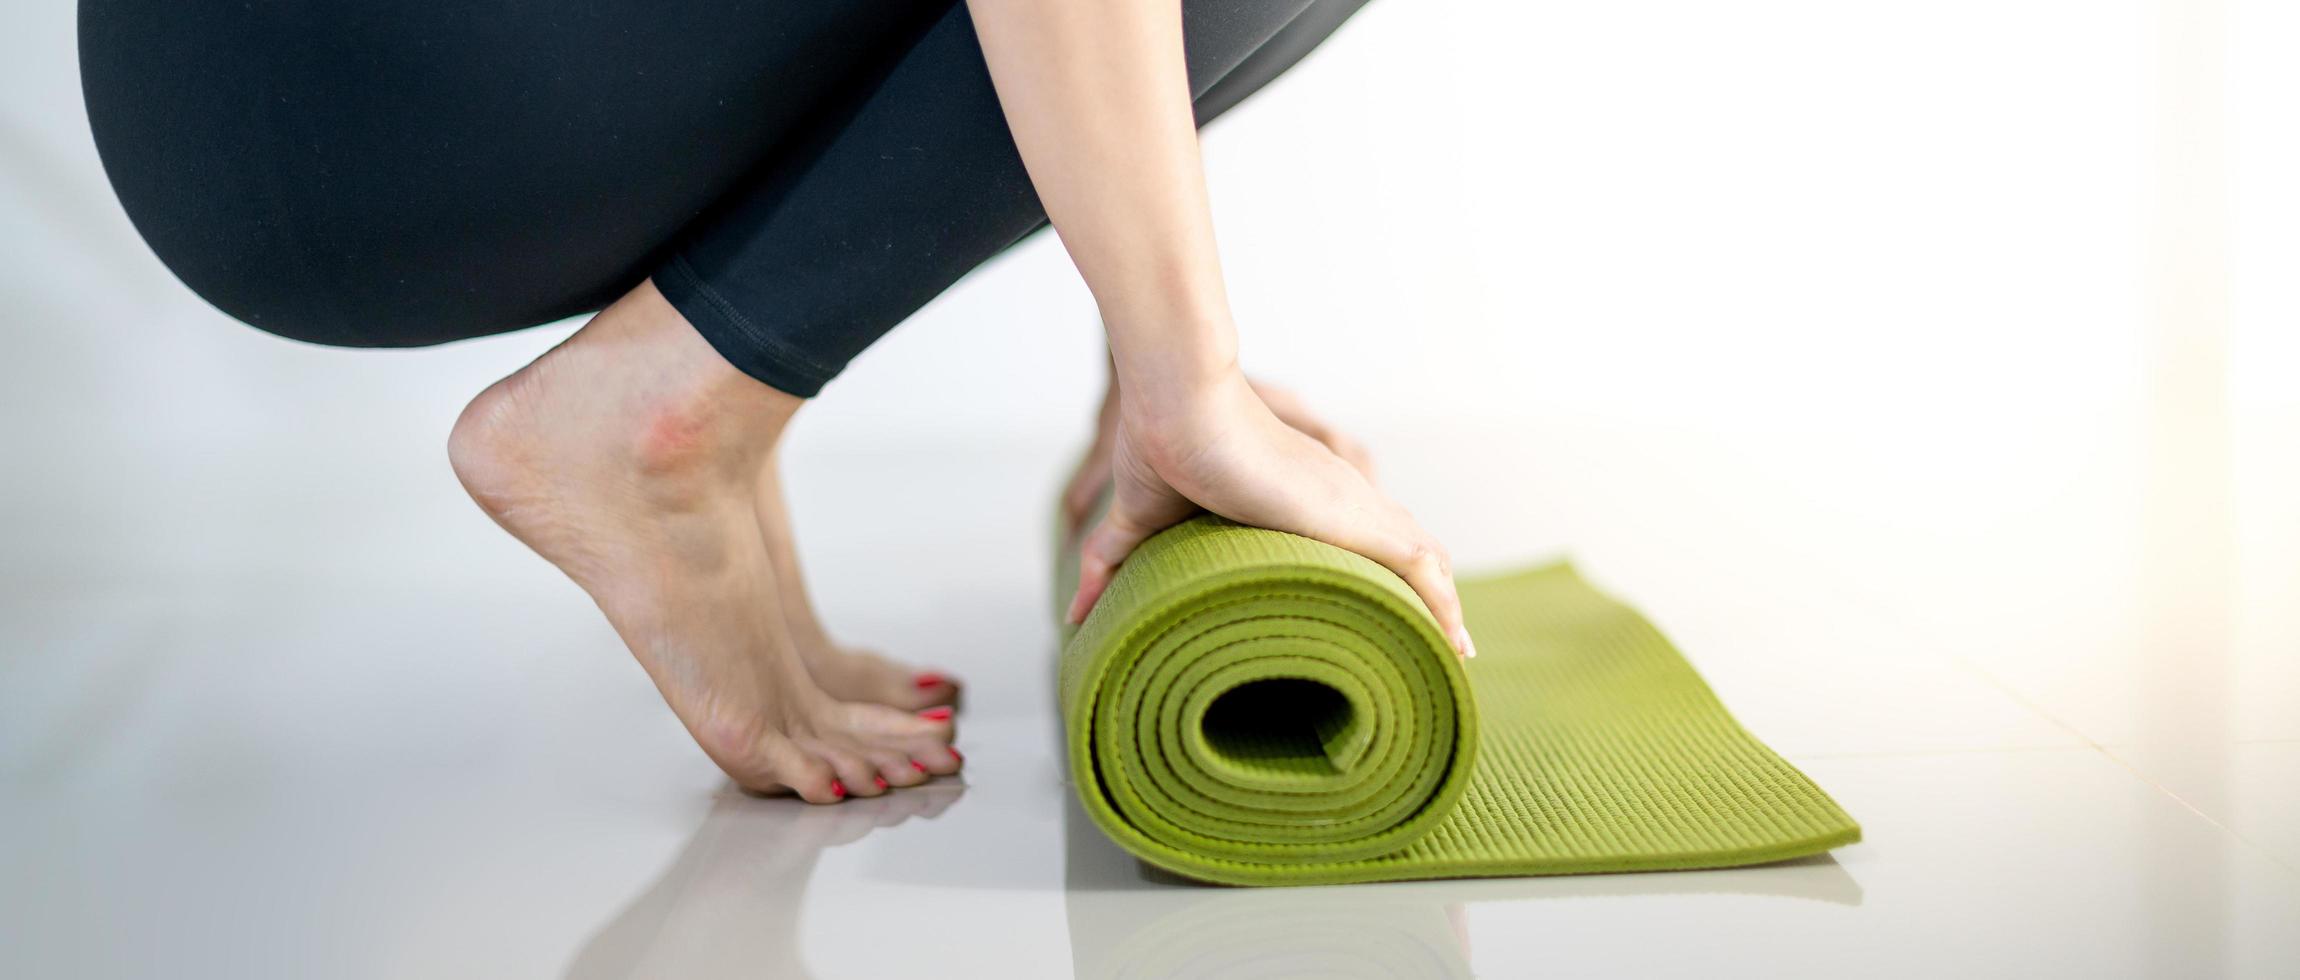 vrouwelijke hand rollende groene yogamat voor het voorbereiden van oefeningen op de mat. foto